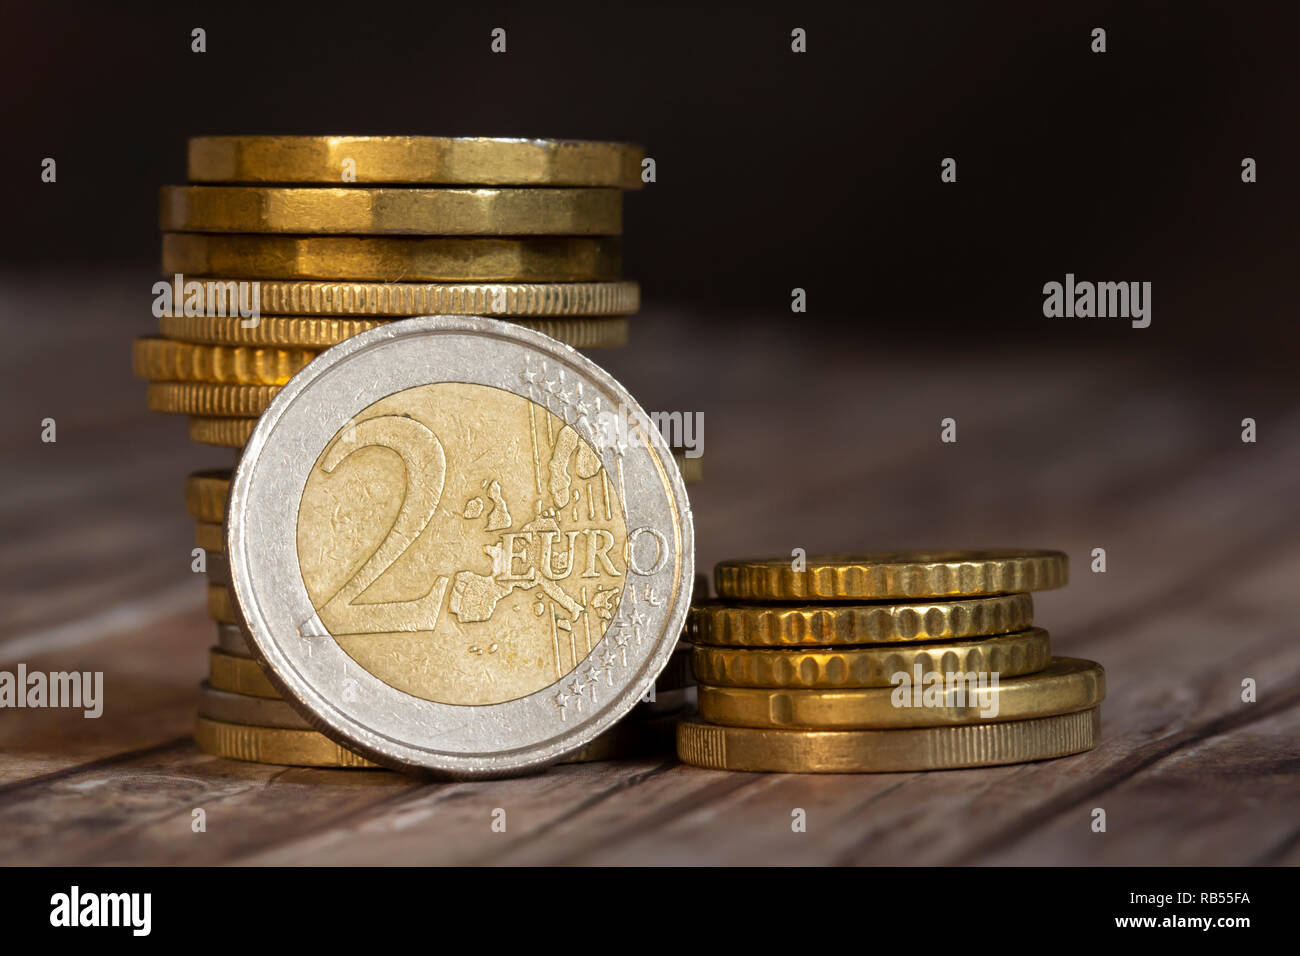 euro coins closeup Stock Photo